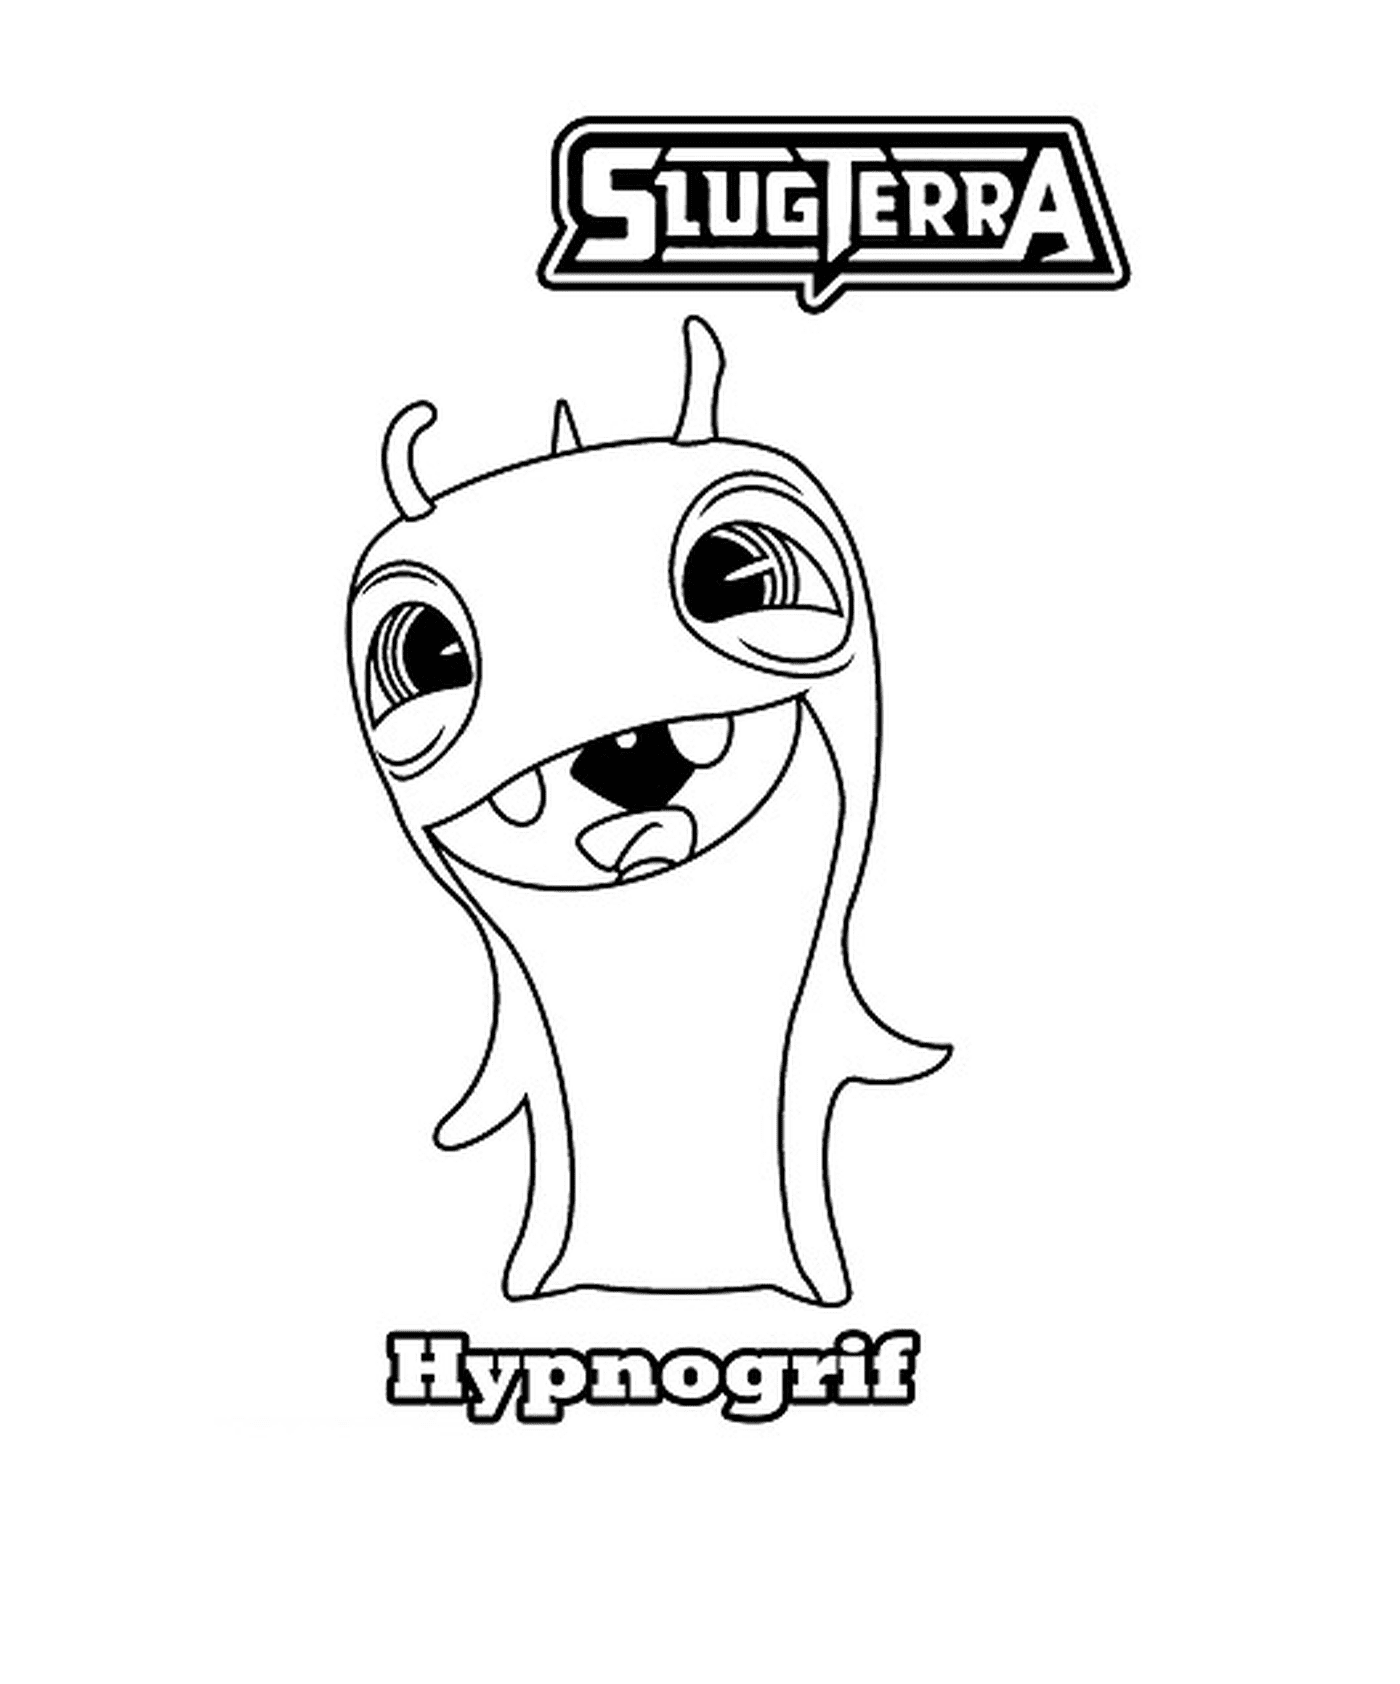  Hipnotizador de dibujos animados slugterra hipnogrif 